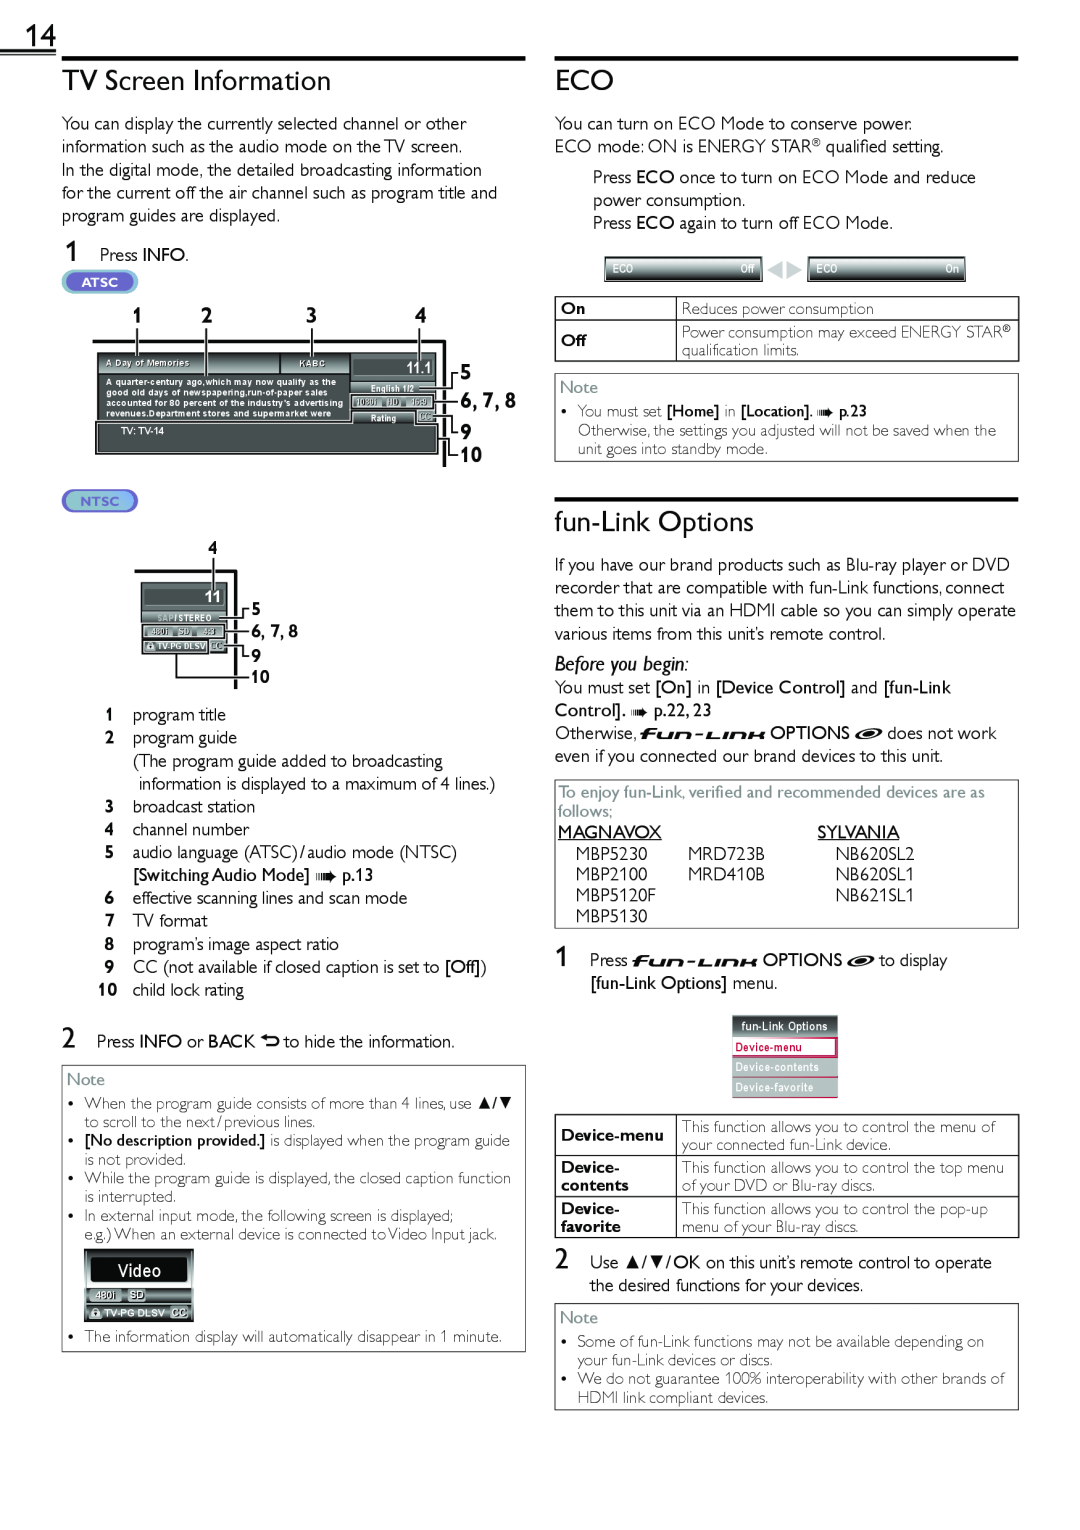 Magnavox 1-866-341-3738, 19ME601B owner manual TV Screen Information, fun-Link Options, 6, 7, Before you begin, Video 